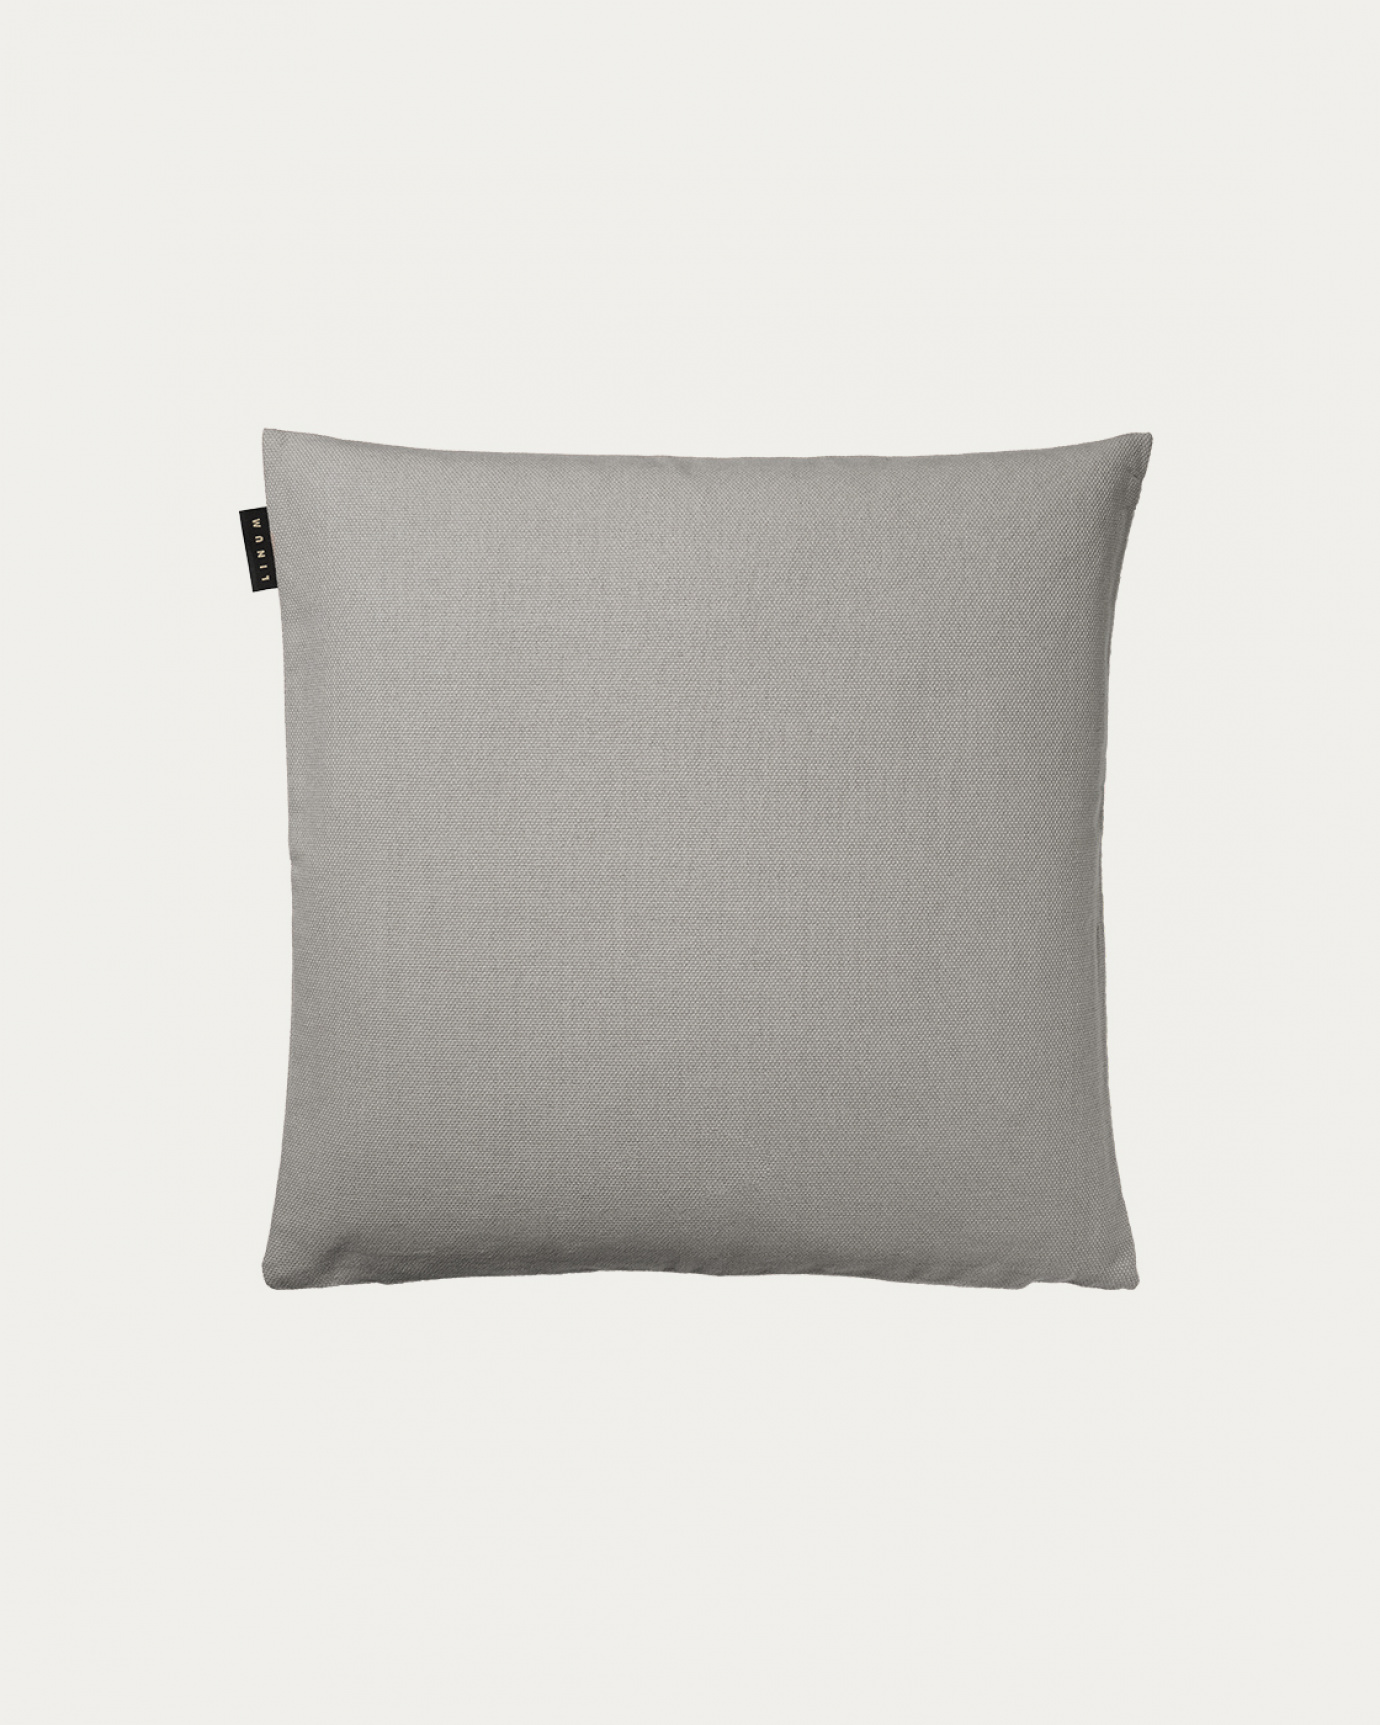 Produktbild hellgrau PEPPER Kissenhülle aus weicher Baumwolle von LINUM DESIGN. Einfach zu waschen und langlebig für Generationen. Größe 40x40 cm.